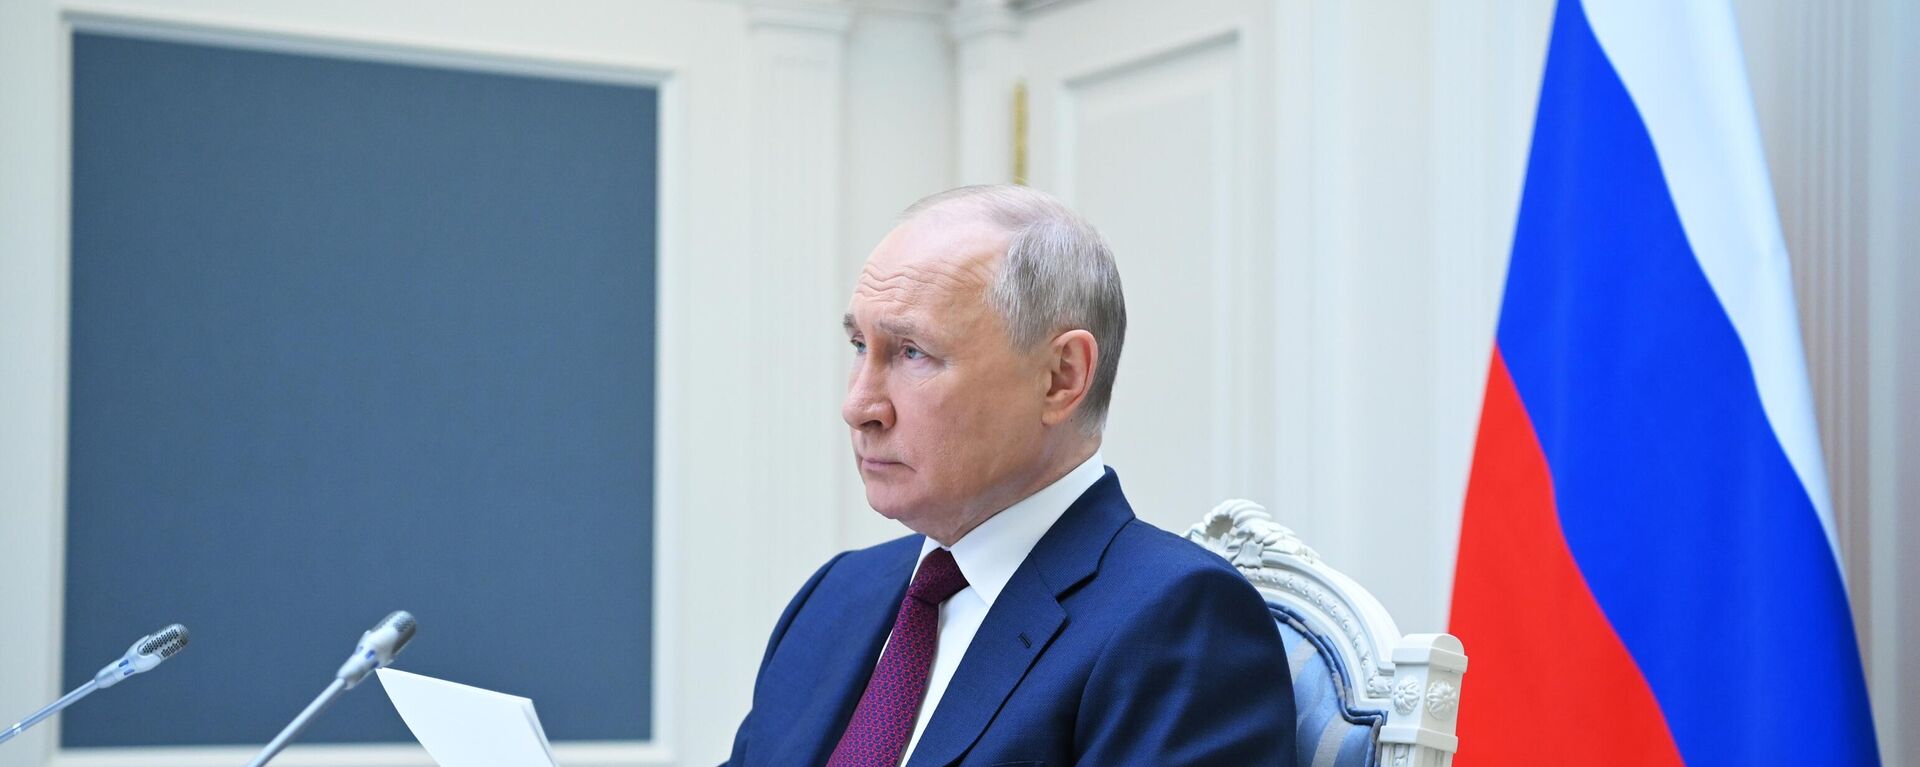 Vladimir Putin takes part in SCO meeting - Sputnik International, 1920, 04.07.2023